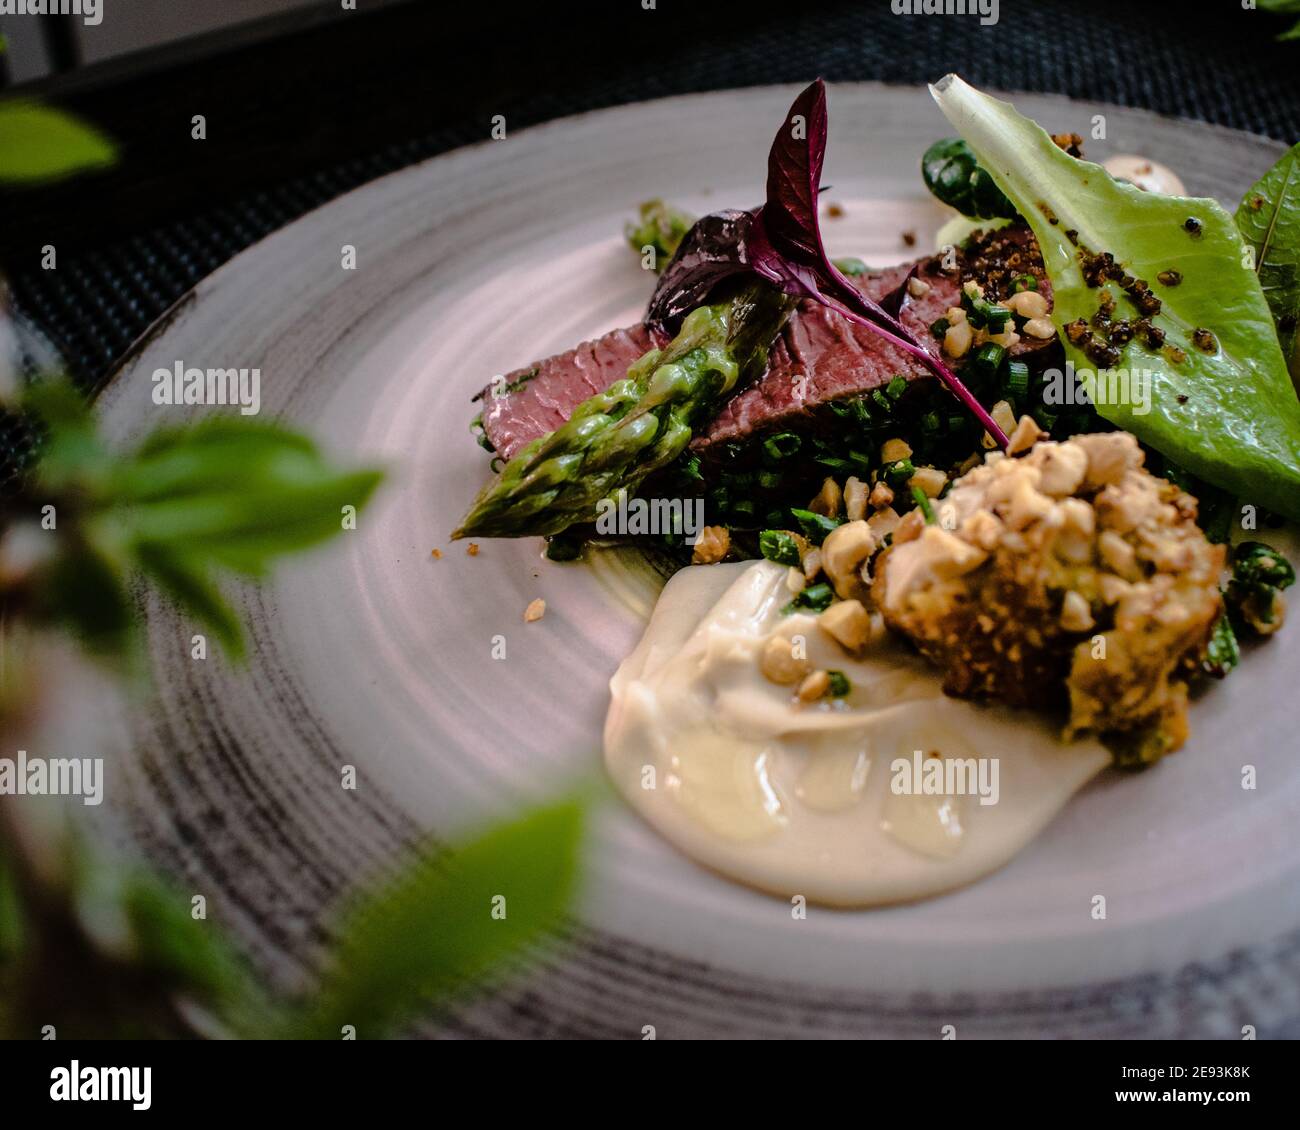 Plat de steak d'autruche avec asperges blanches et vertes, légumes verts et sauce sur une assiette sur une table en bois dans un restaurant Banque D'Images